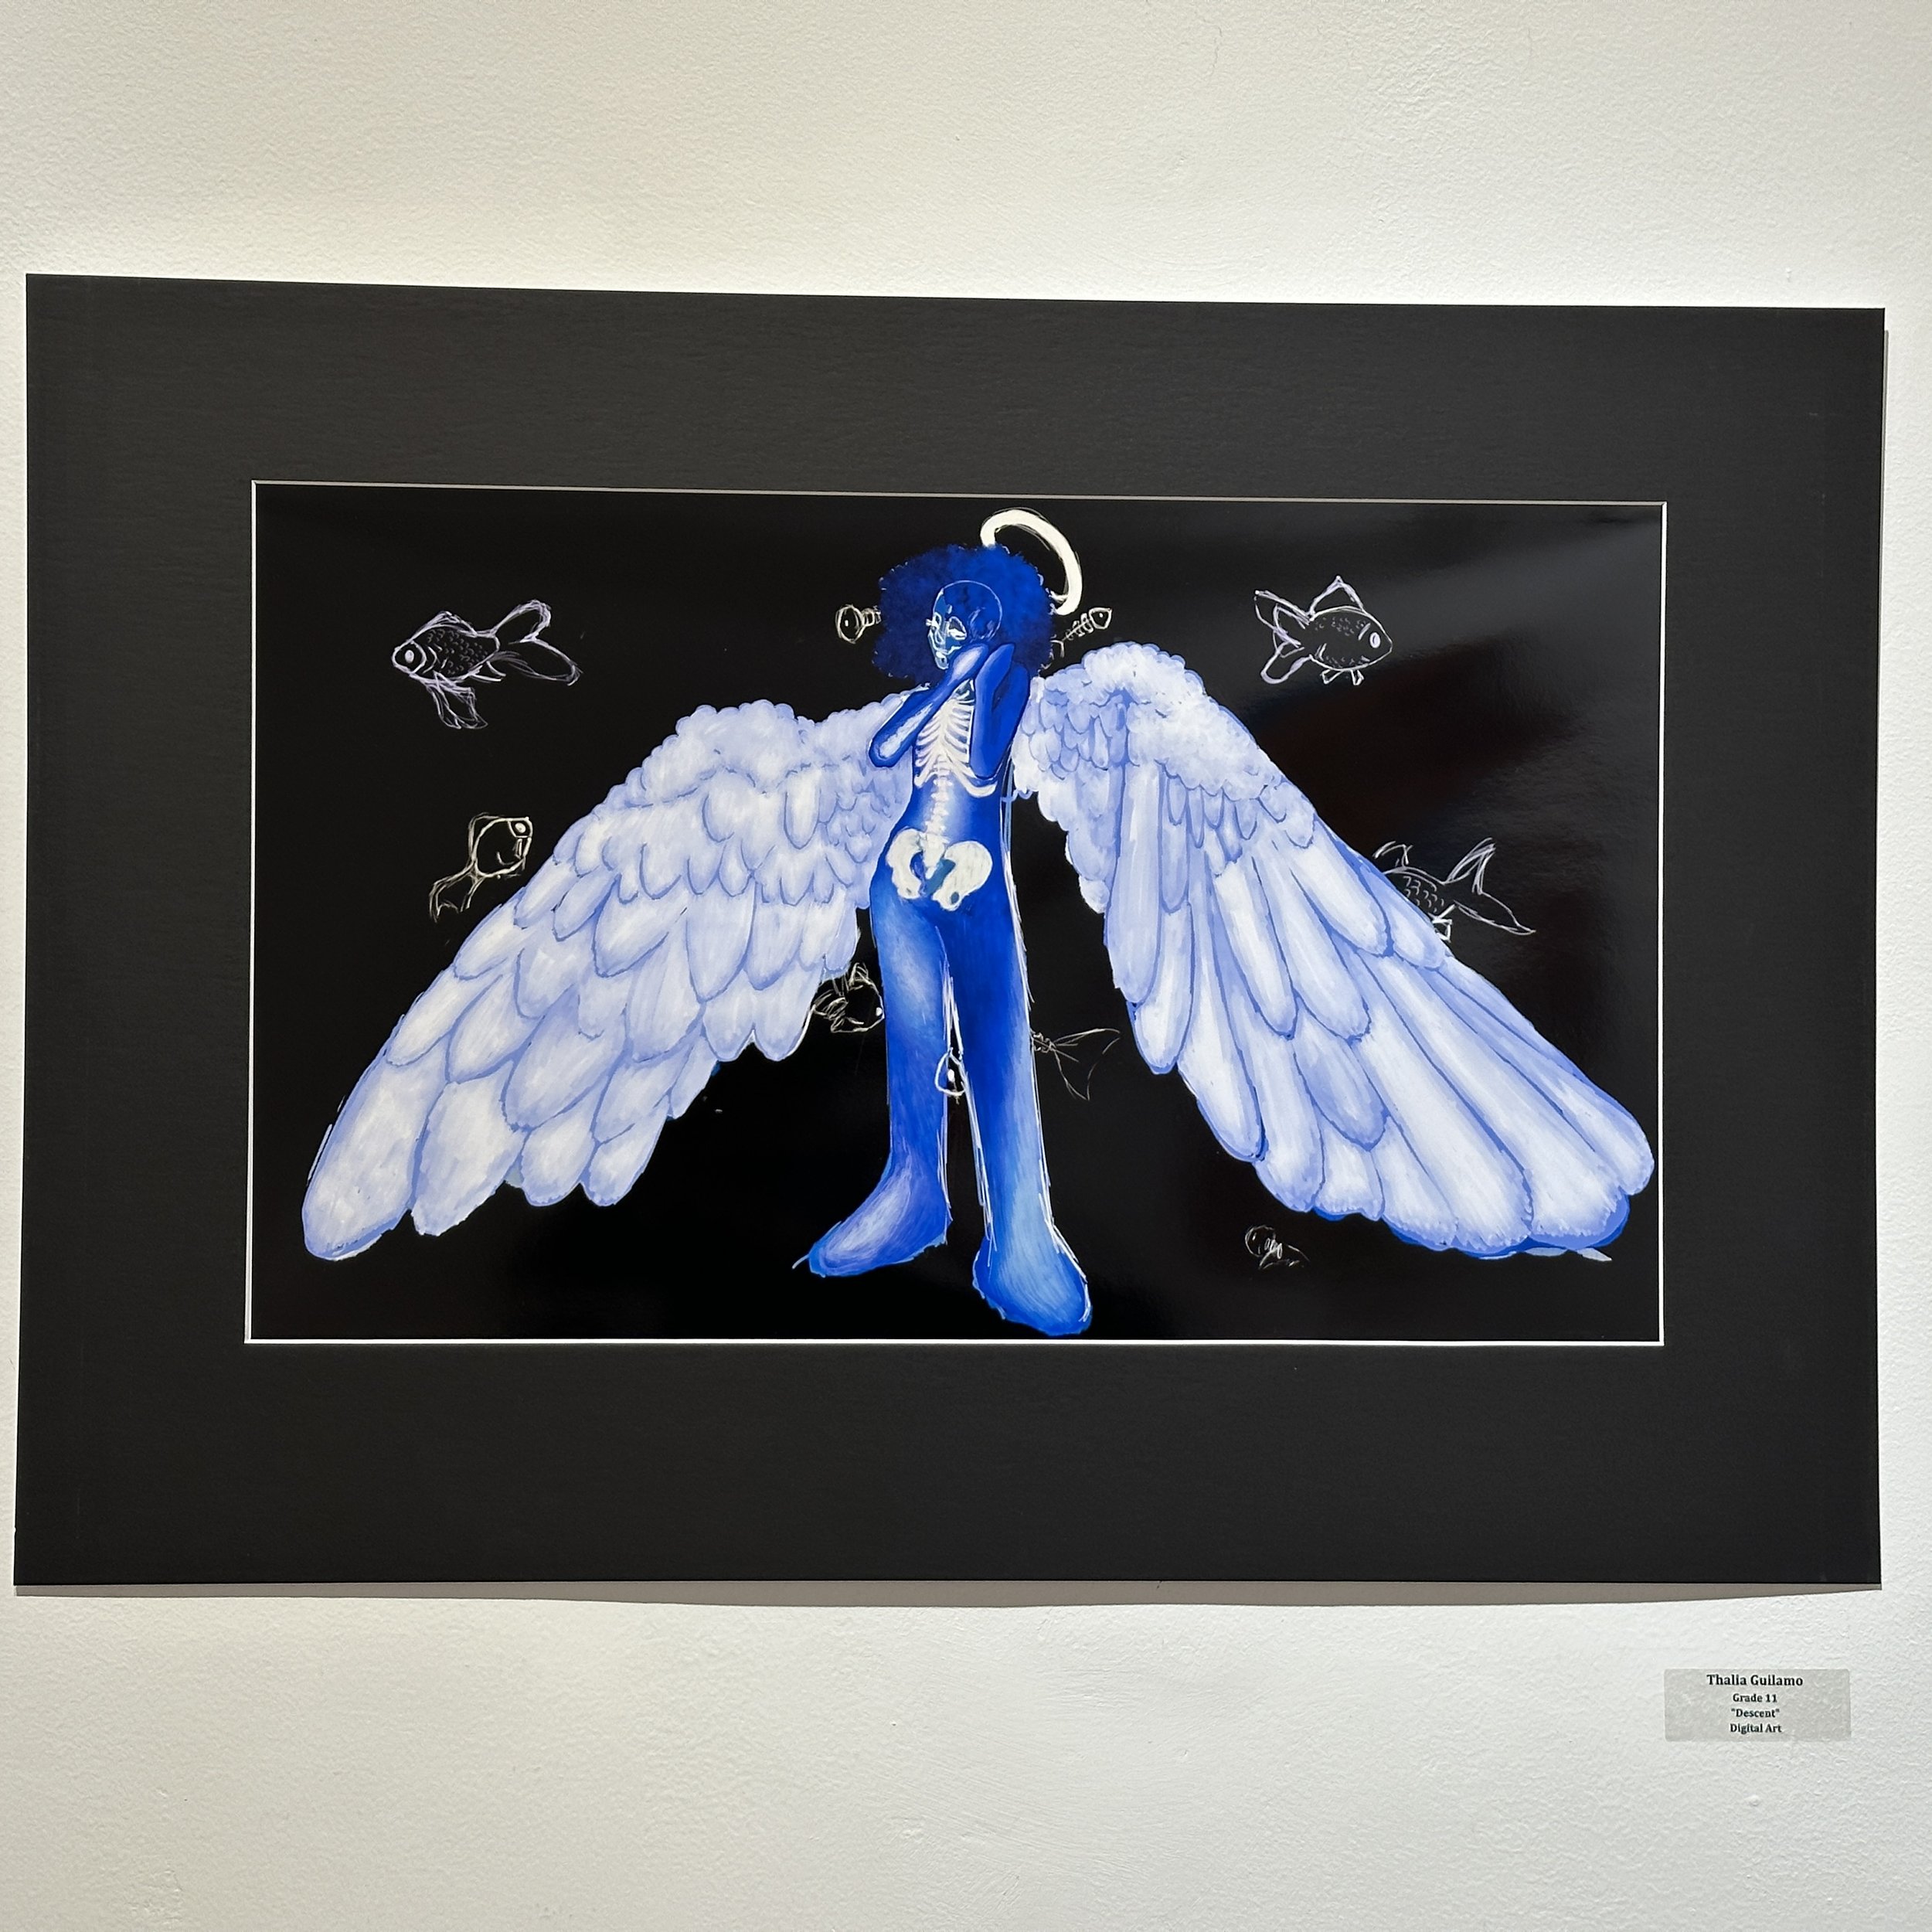 Thalia Guilamo, Grade 11, “Descent” Digital art